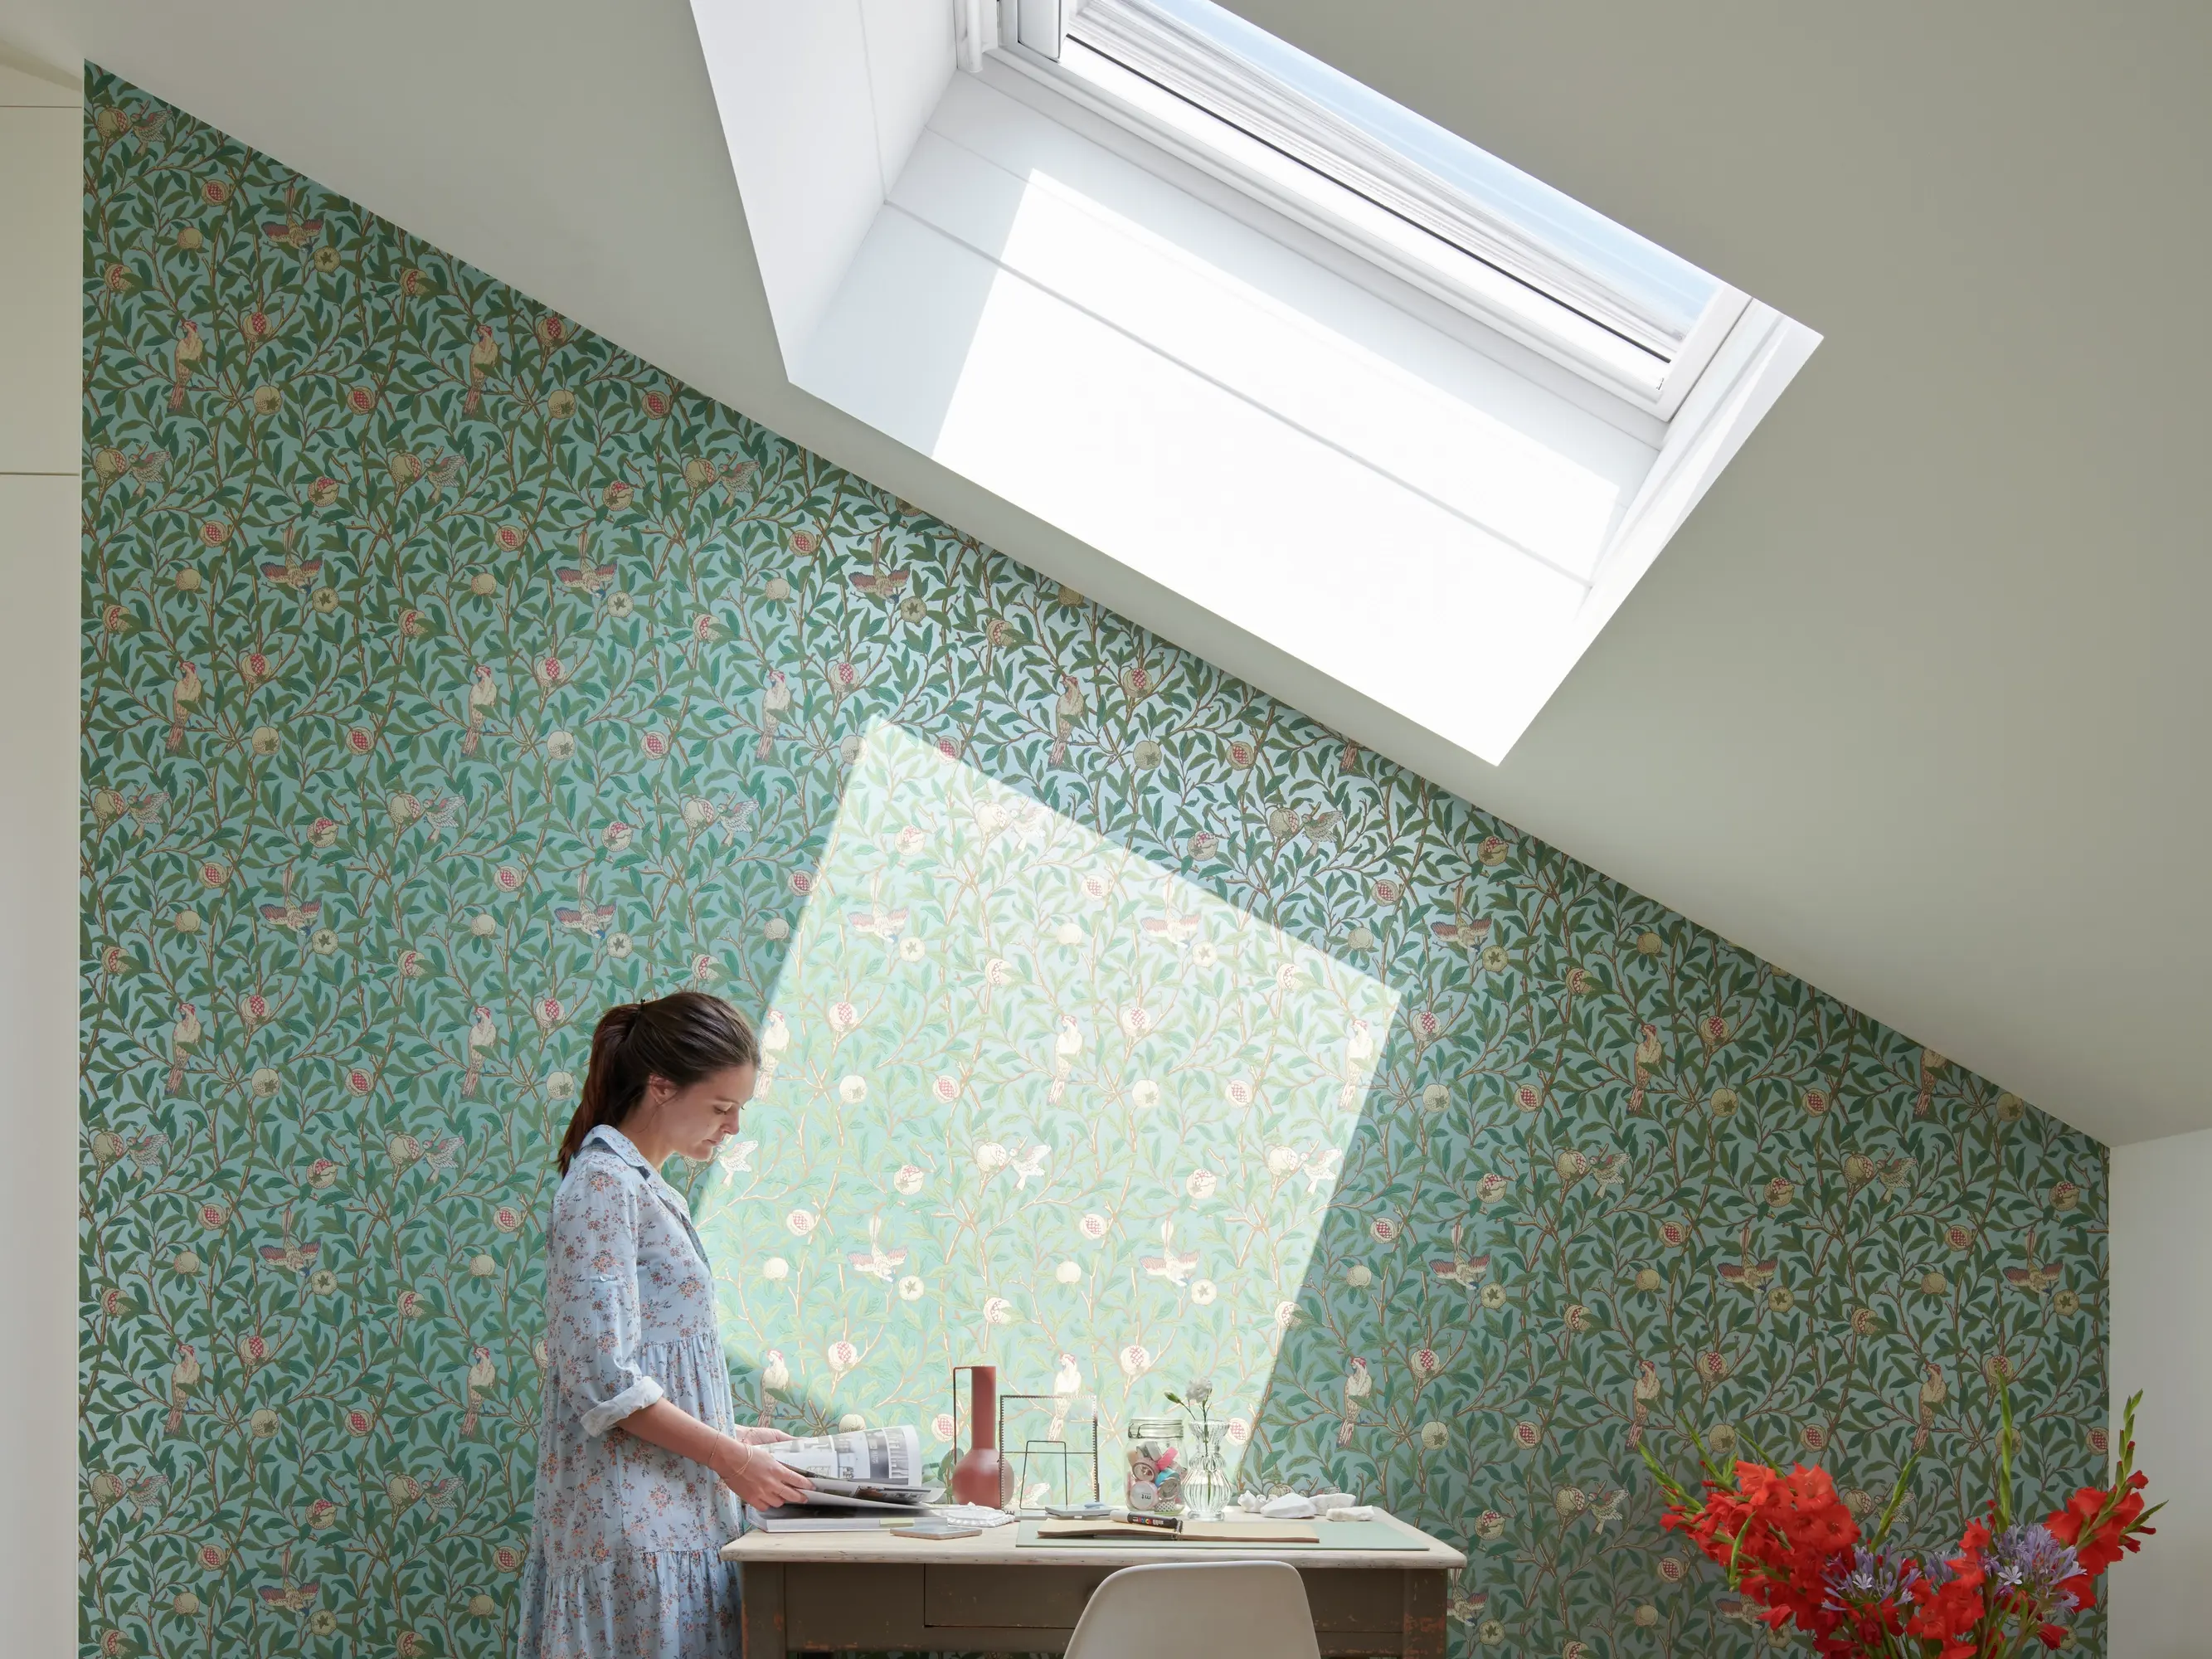 Bureau à domicile avec fenêtre de toit VELUX et papier peint floral, créant un espace de travail lumineux.